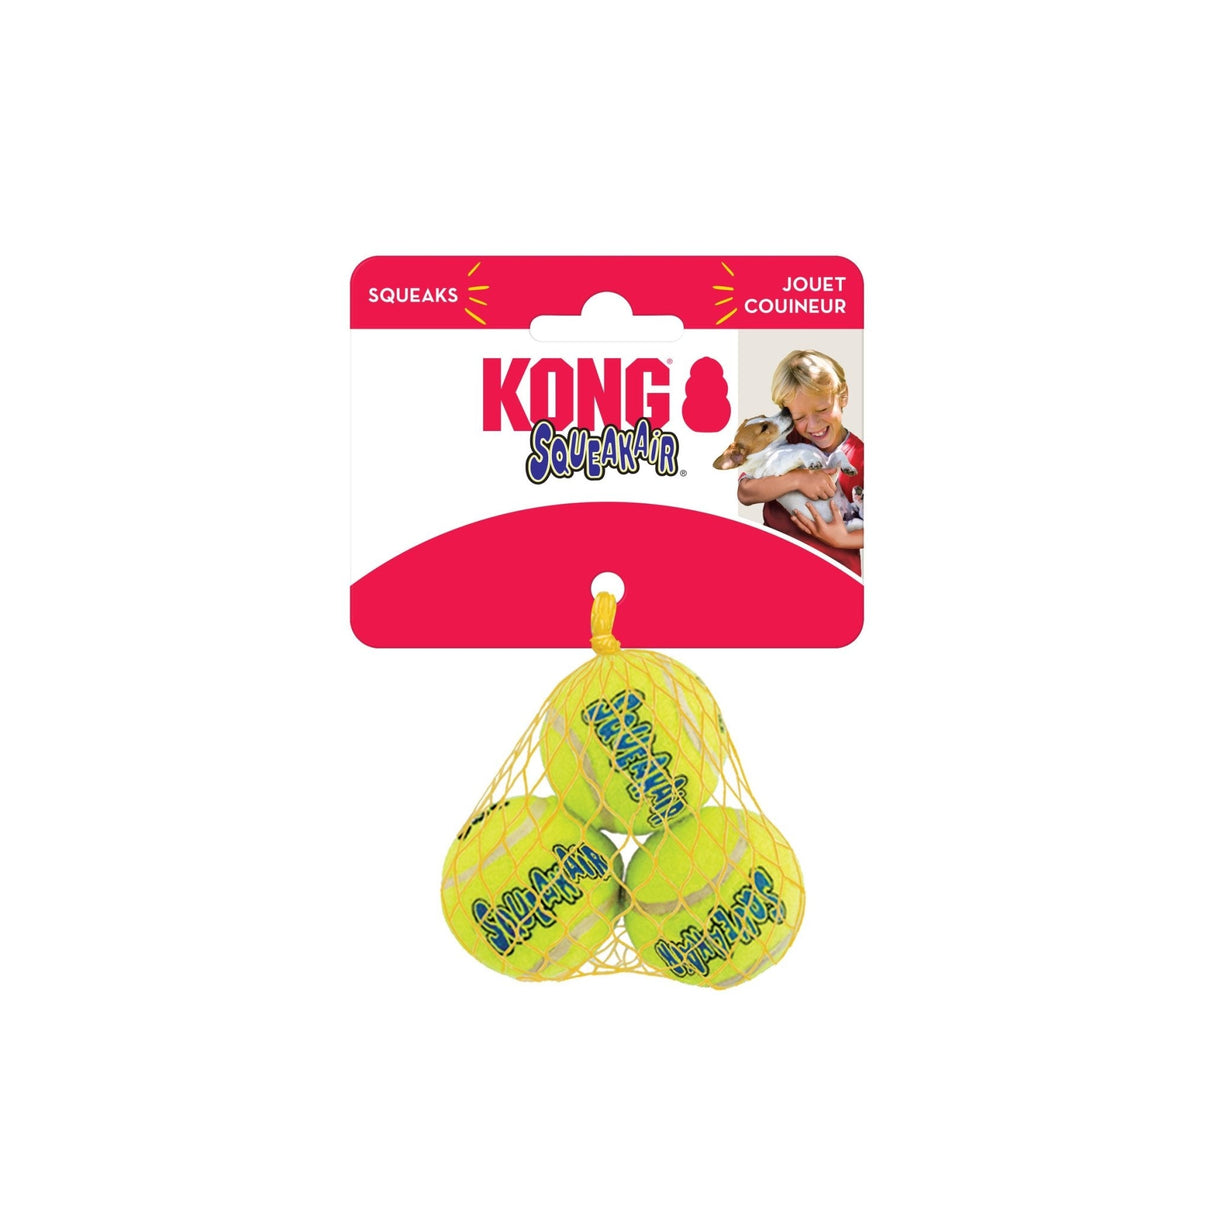 KONG Squeak Air Tennis Balls 3-Pack Dog Toy, Kong, XSmall